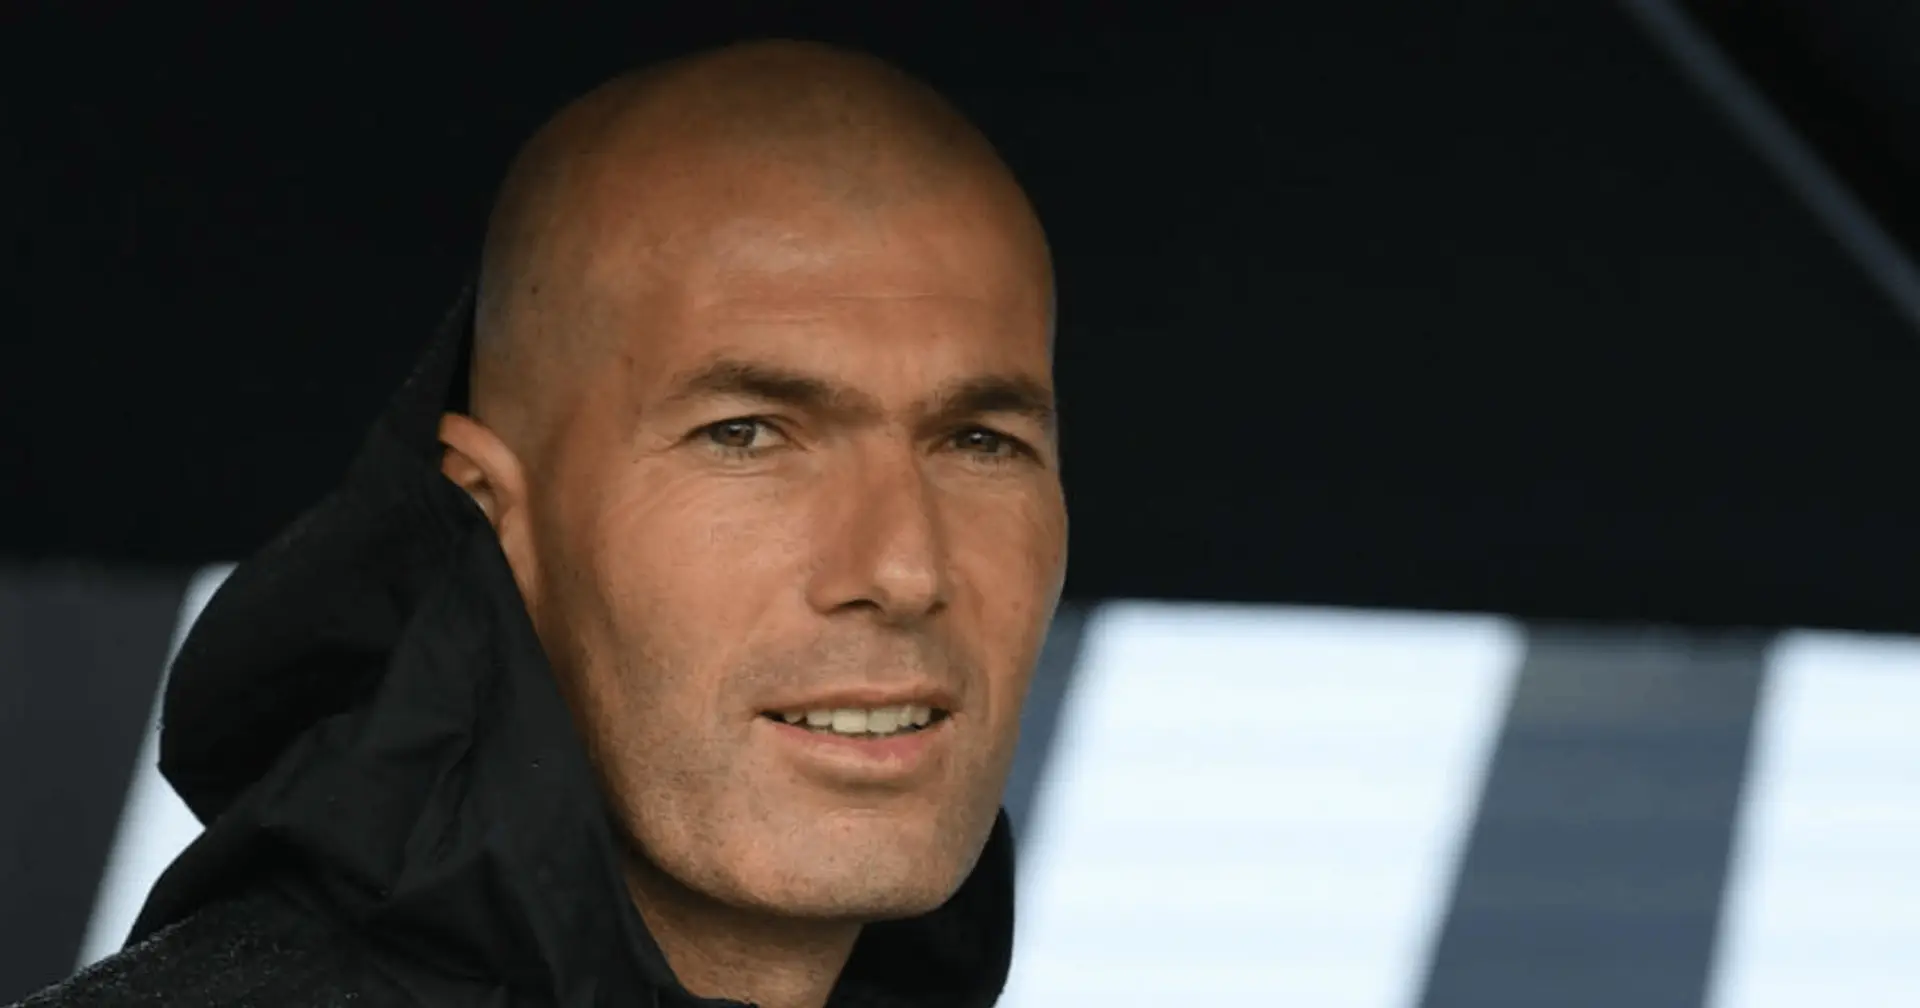 La popularité de Zinedine Zidane sur les réseaux sociaux peut lui rapporter 200 000 € par publication